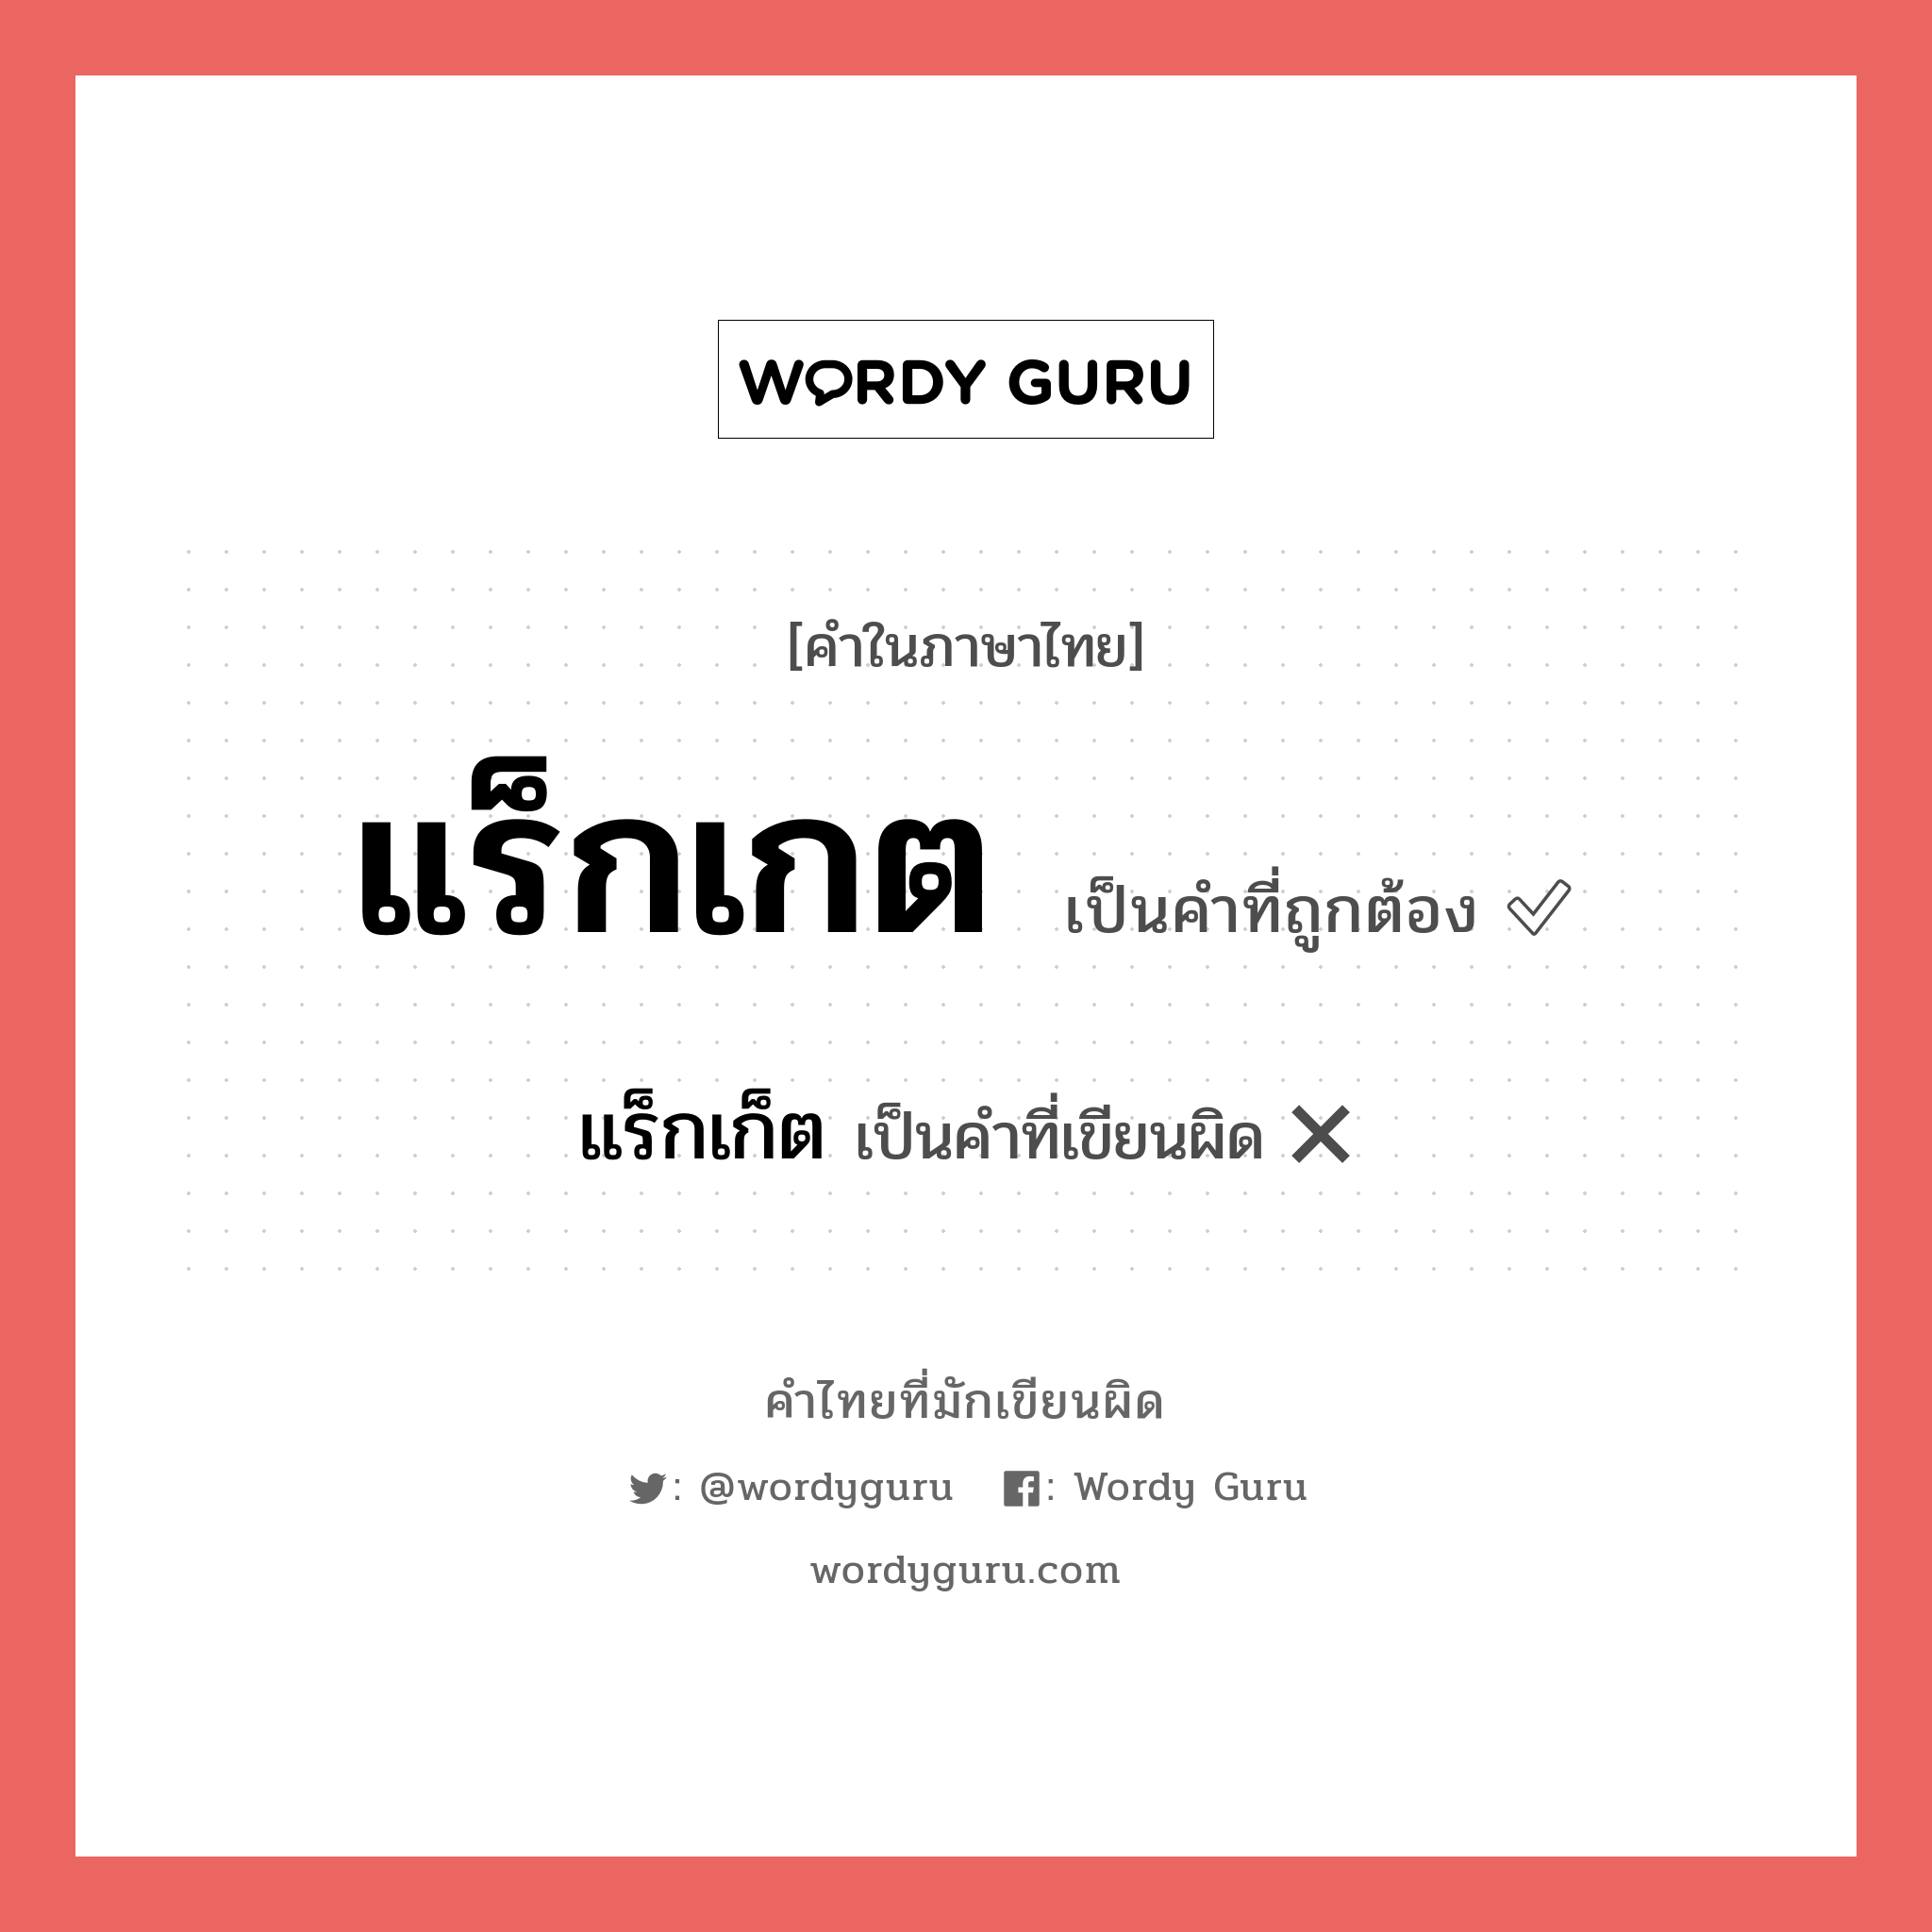 แร็กเกต หรือ แร็กเก็ต เขียนยังไง? คำไหนเขียนถูก?, คำในภาษาไทยที่มักเขียนผิด แร็กเกต คำที่ผิด ❌ แร็กเก็ต